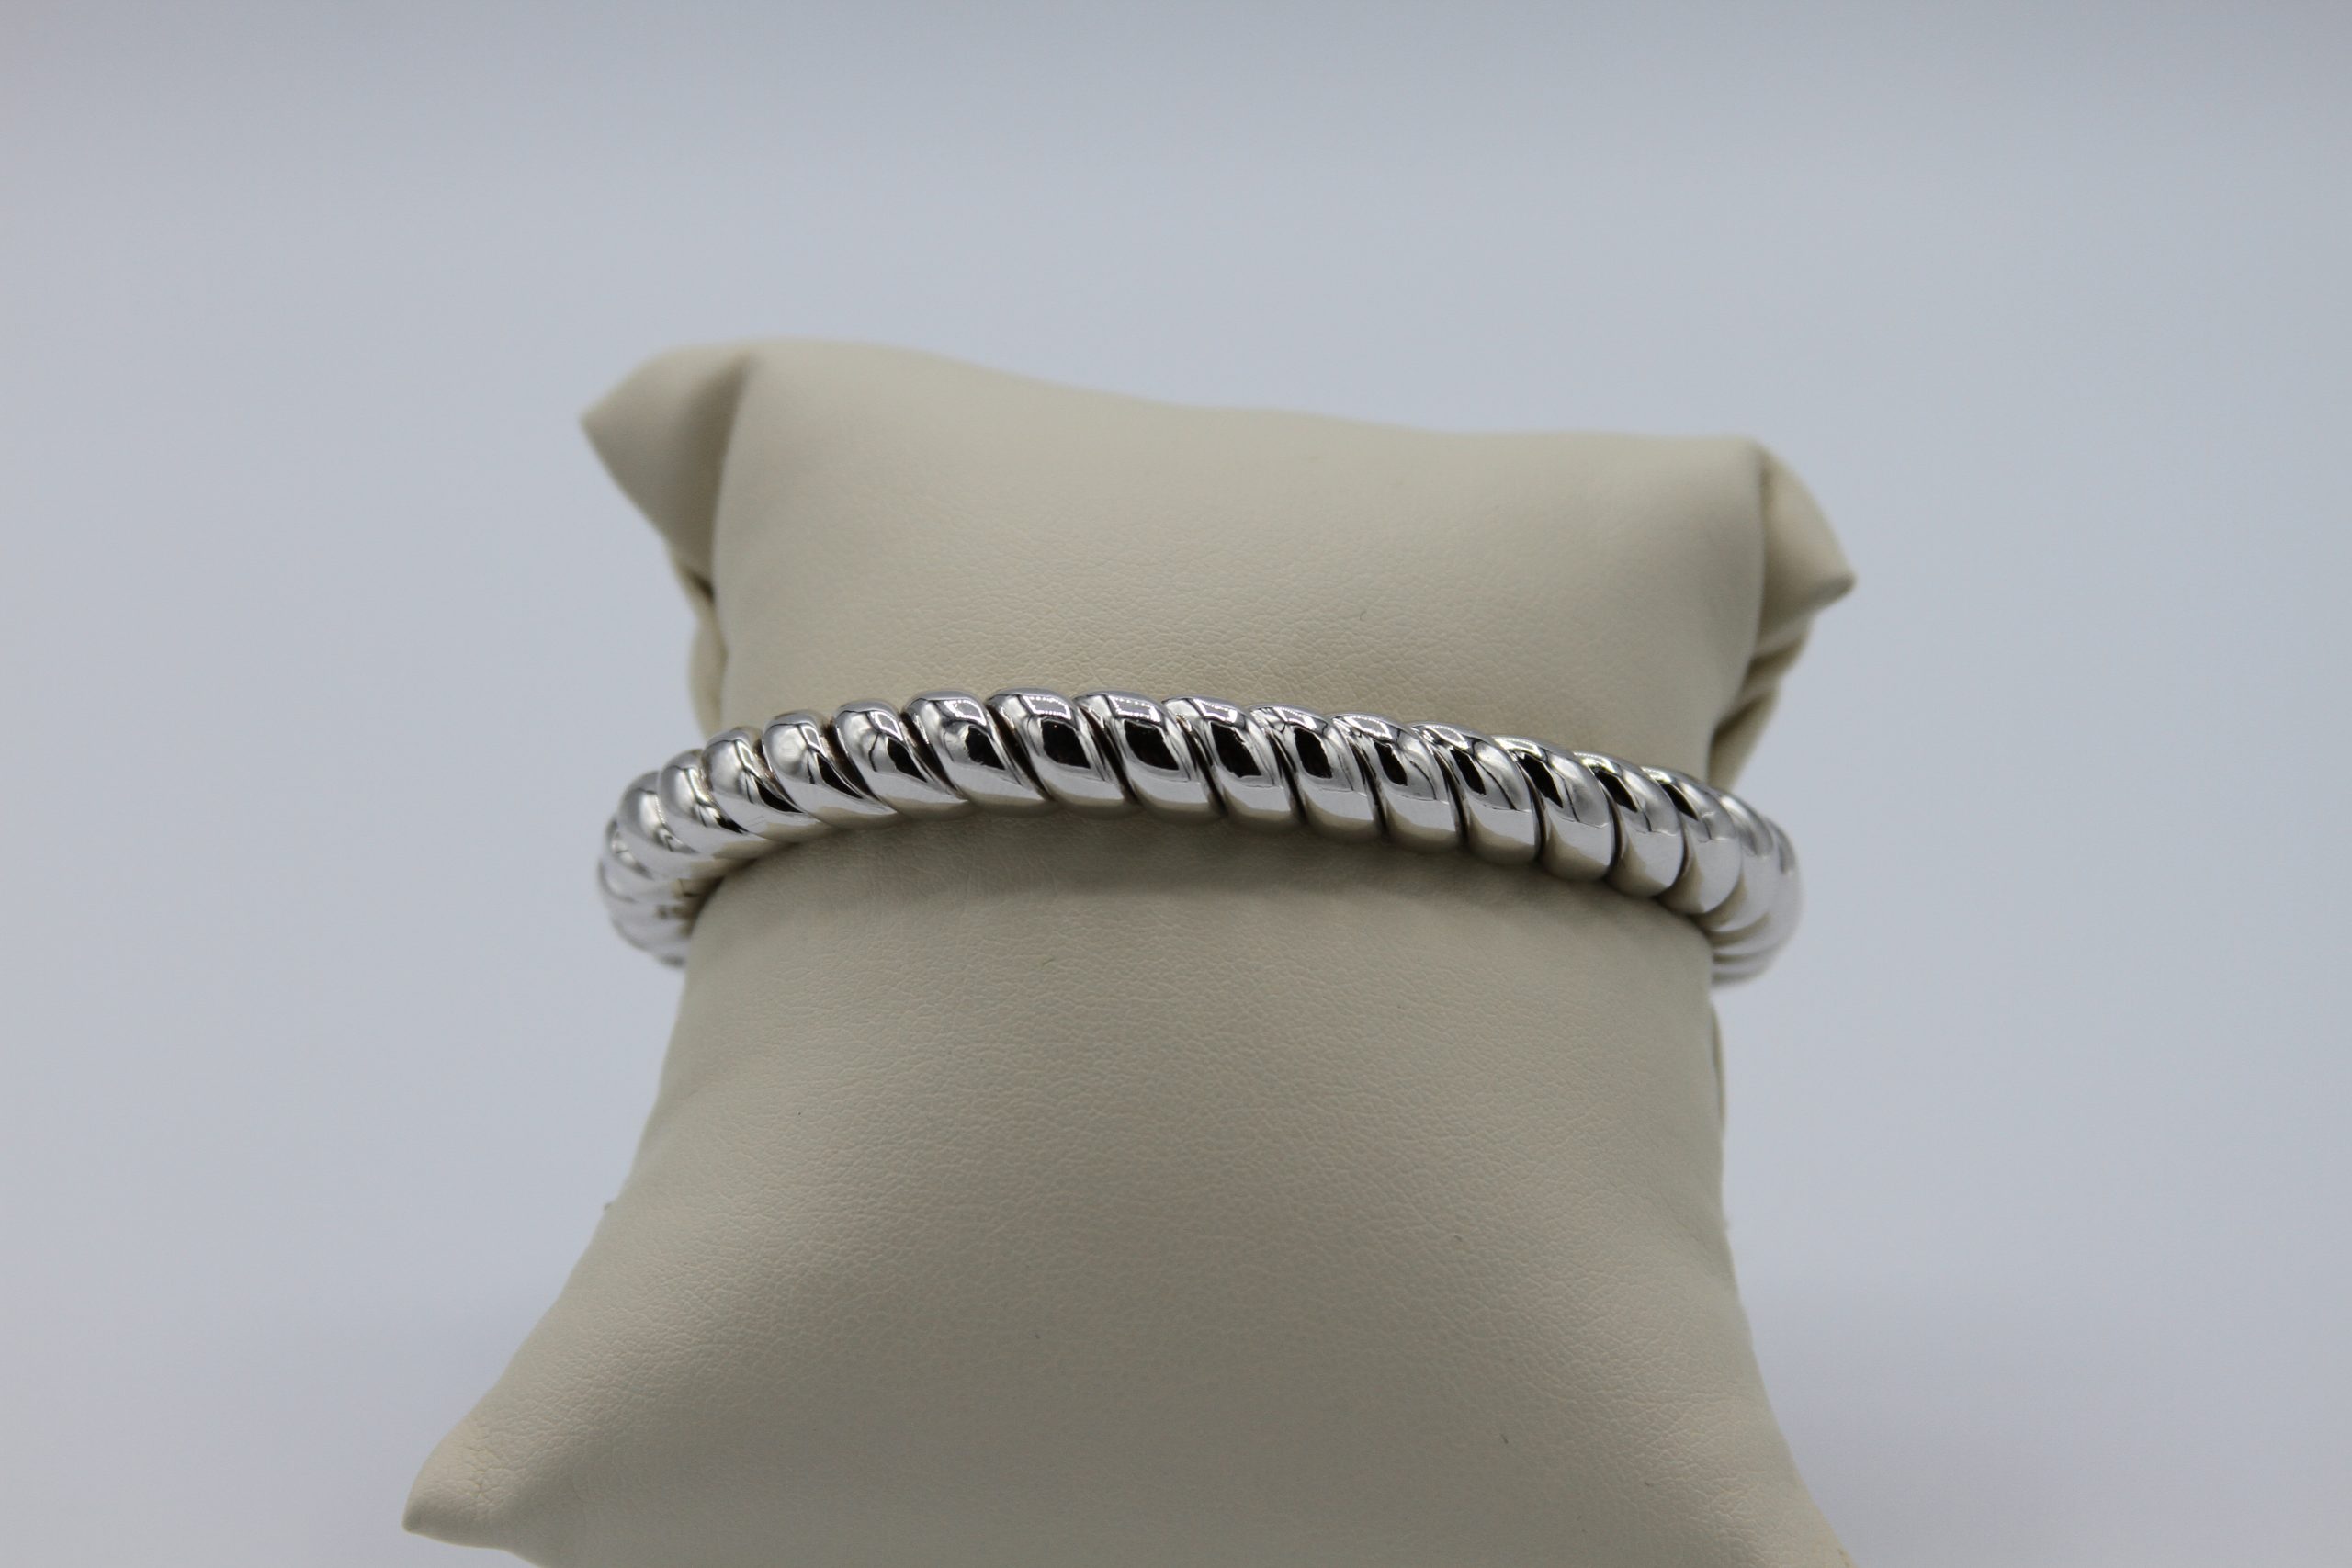 A twined silver bracelet